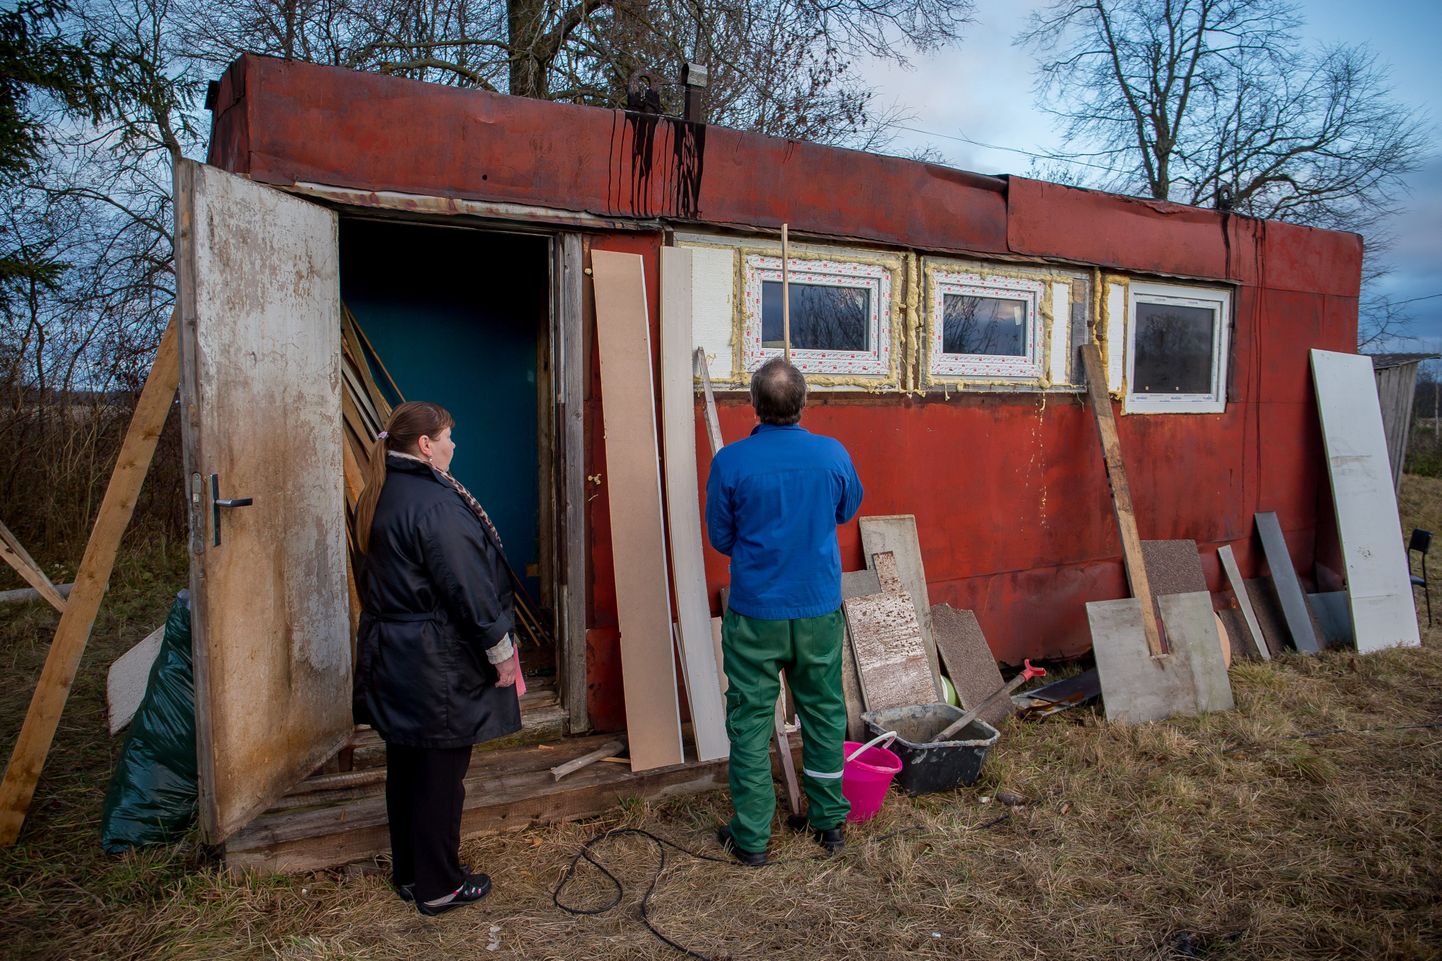 Viktor ja Svetlana Stetsenko kõrvalkrundil asuva soojaku ees, mis enne külmade tulekut elamisväärseks ehitada loodetakse.